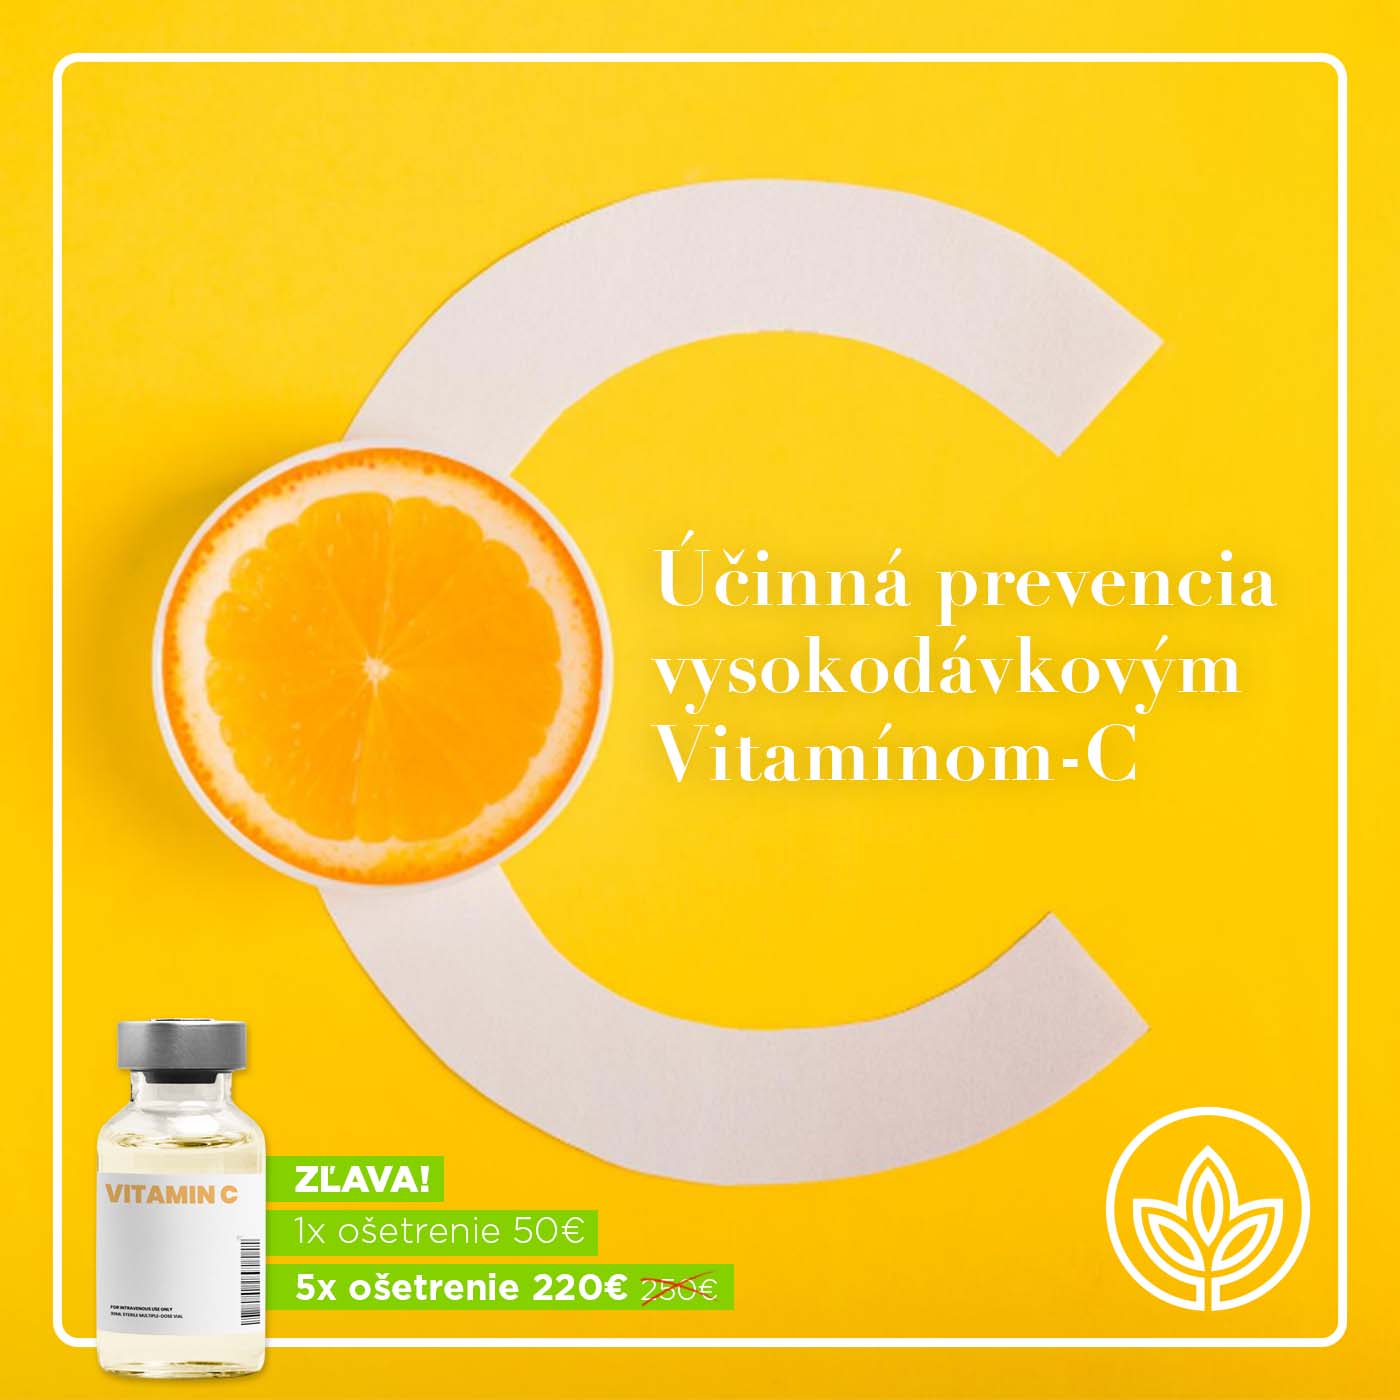 Liečba a prevencia vysokodávkovým Vitamínom C infúzne